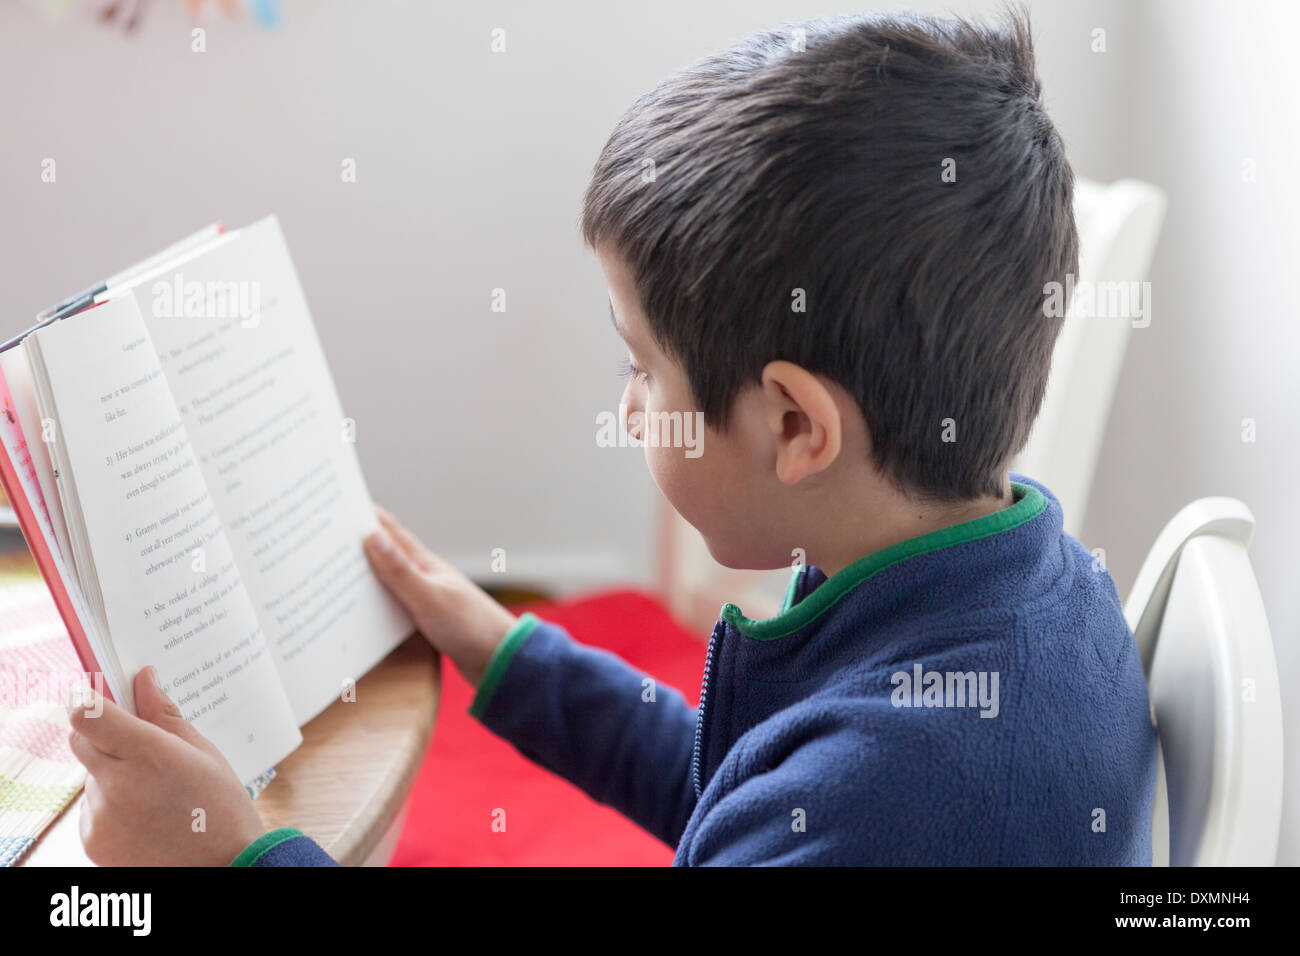 Jeune garçon lit un livre Banque D'Images